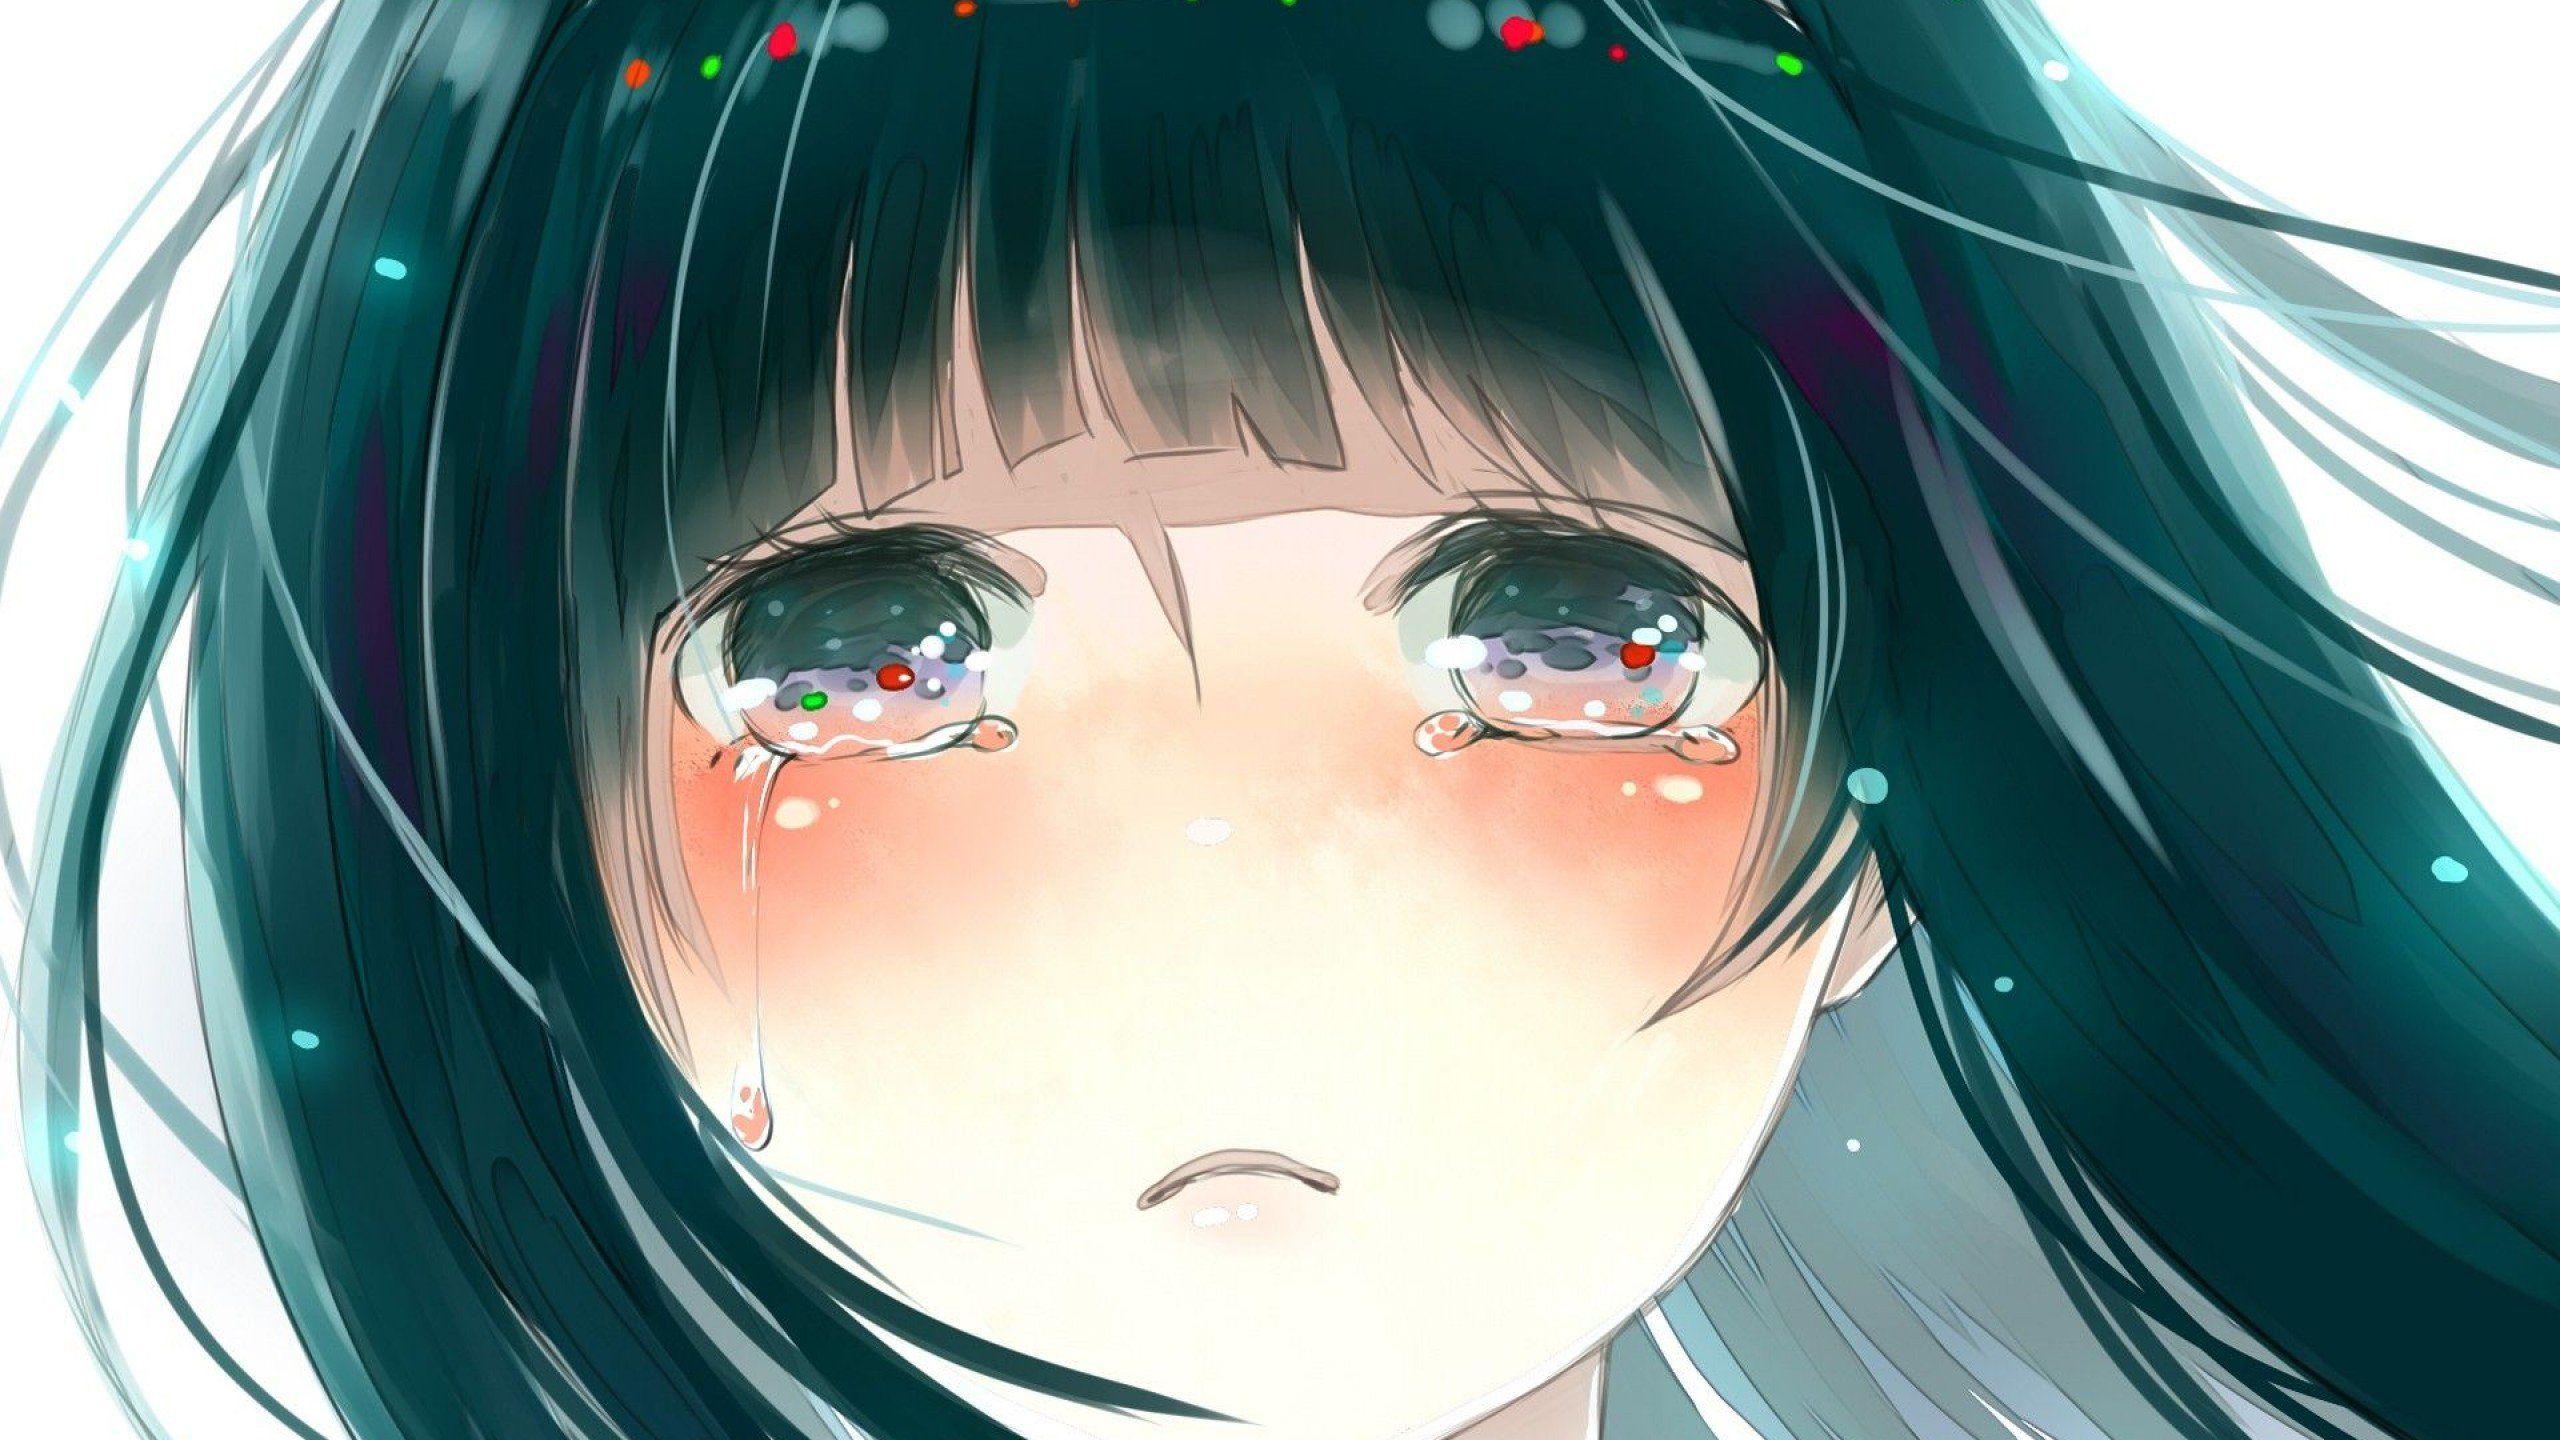 Sad Crying Anime Wallpaper Free Sad Crying Anime